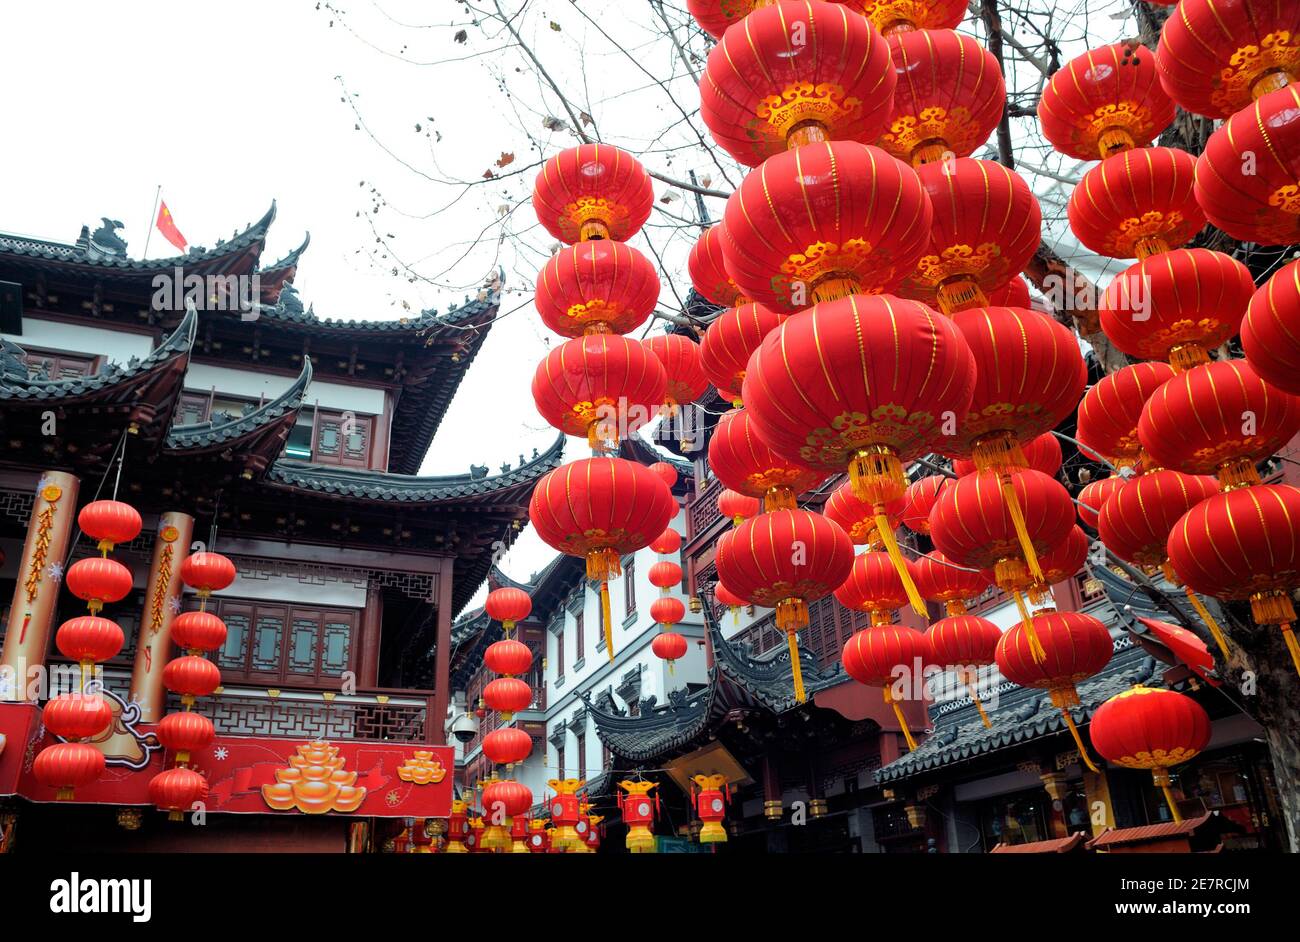 Lanternes rouges typiques dans la ville chinoise pour célébrer le nouvel an chinois. Banque D'Images